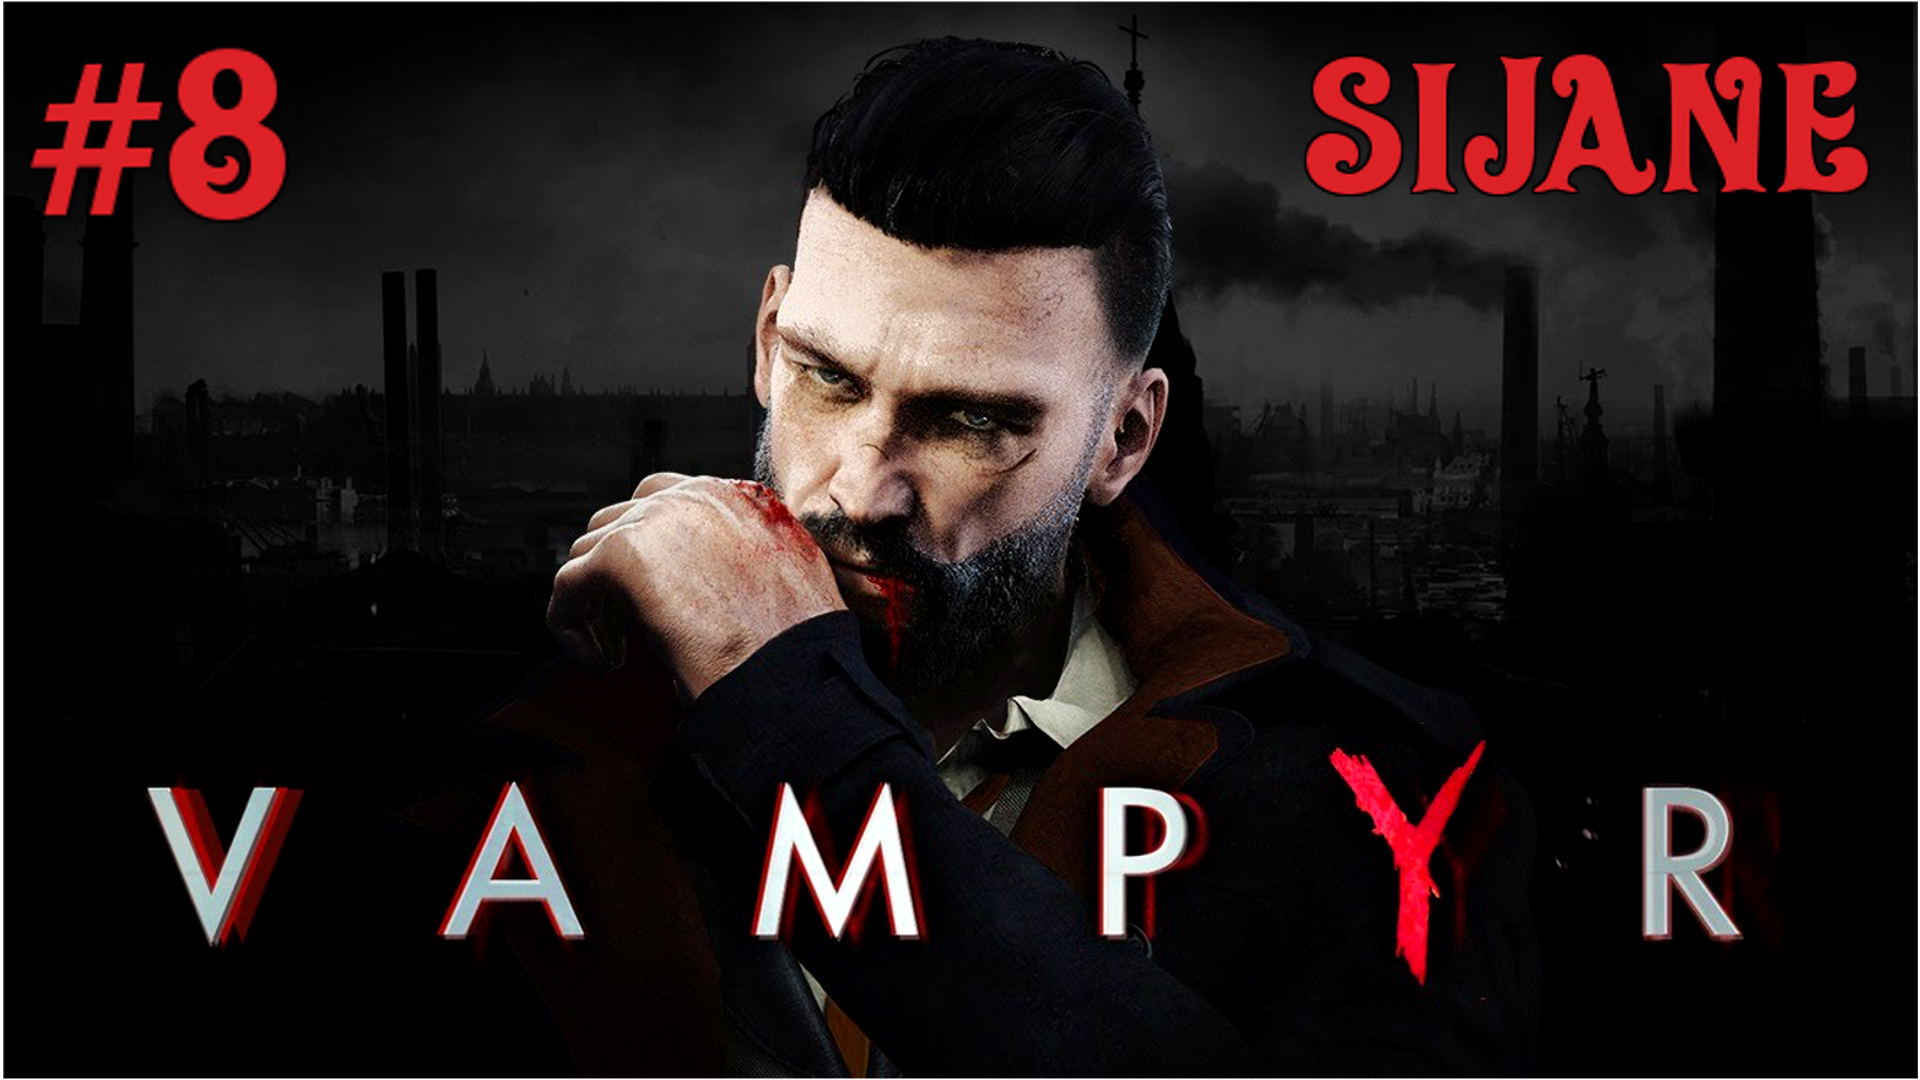 Vampyr #8